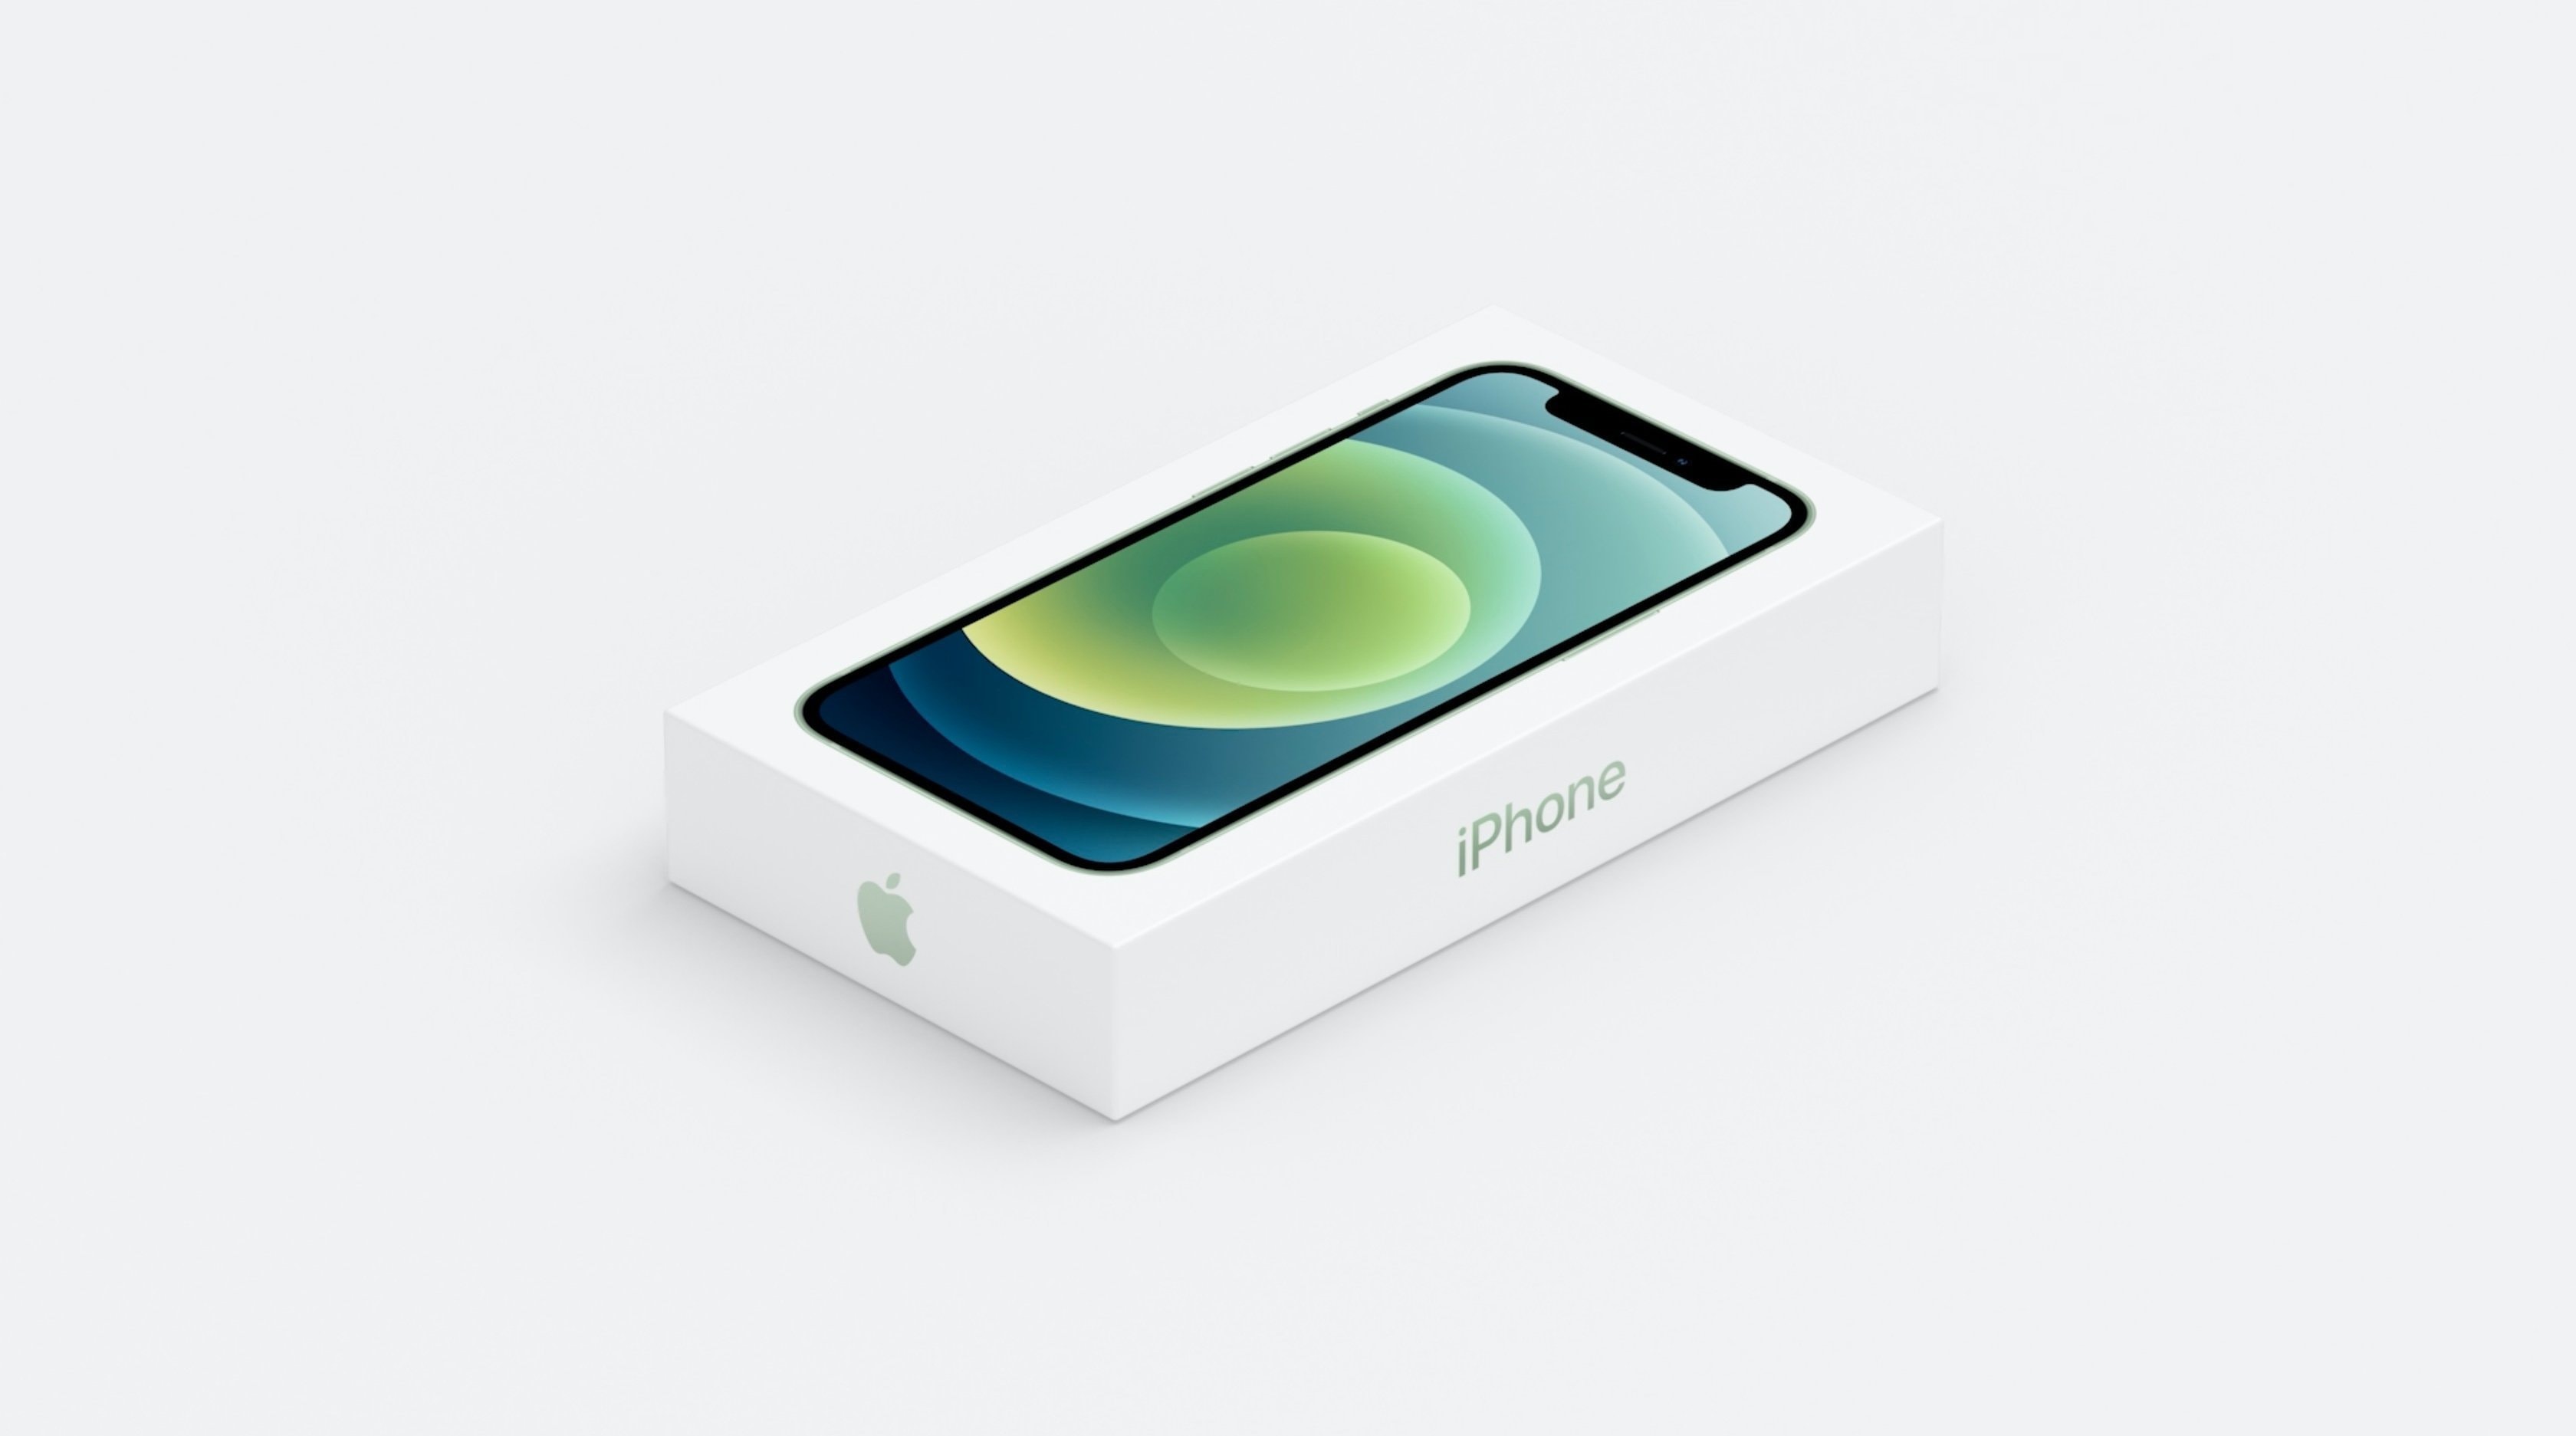 Apple iPhone 12 chính thức: màn hình OLED 6.1 inch, A14 Bionic, có 5G